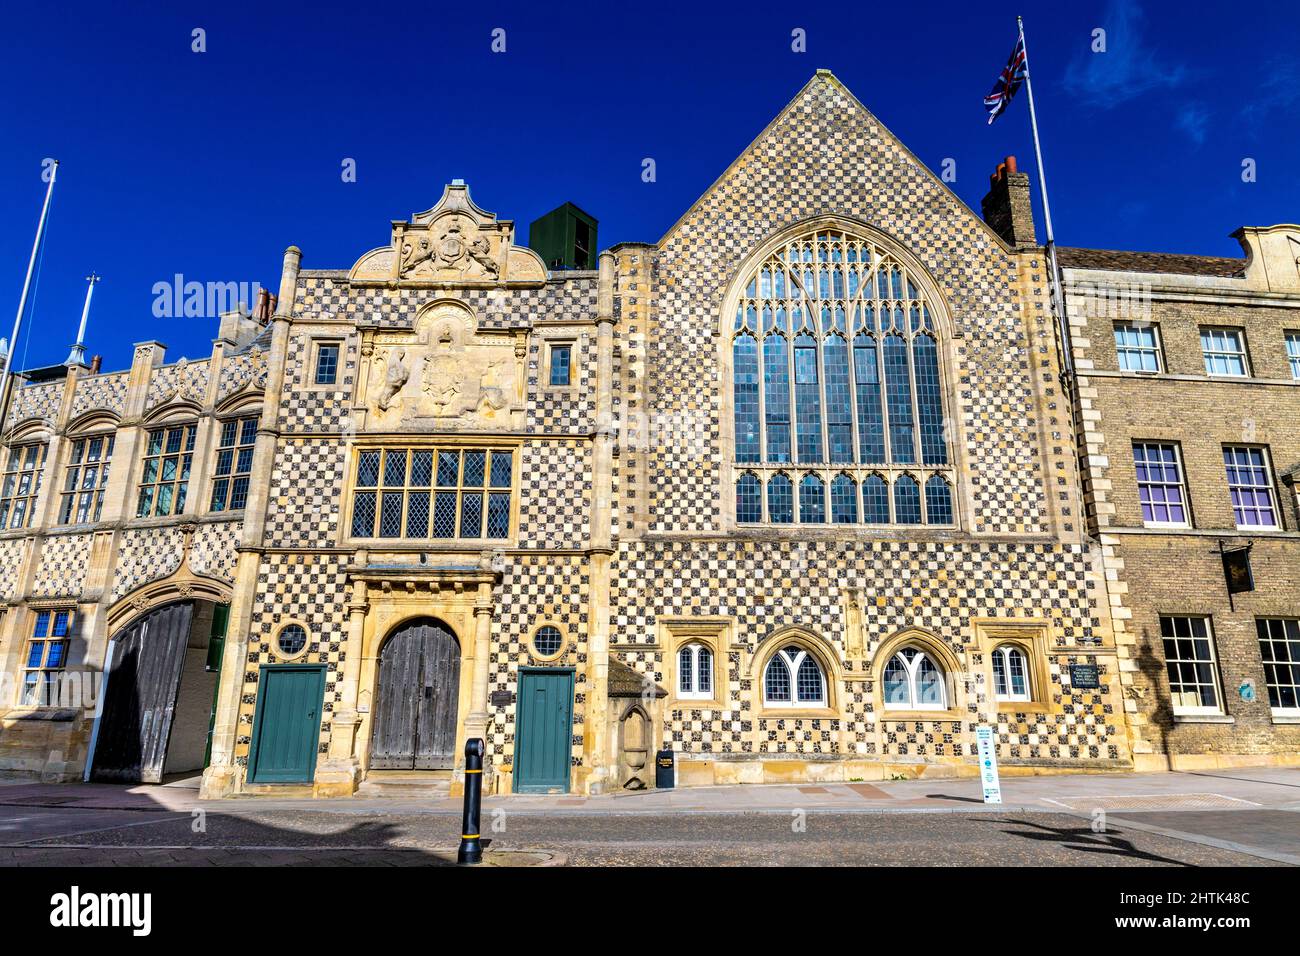 Extérieur de la vieille prison du 15th siècle abritant le musée Stories of Lynn et les anciennes cellules de la prison, King's Lynn, Norfolk, Angleterre, Royaume-Uni Banque D'Images